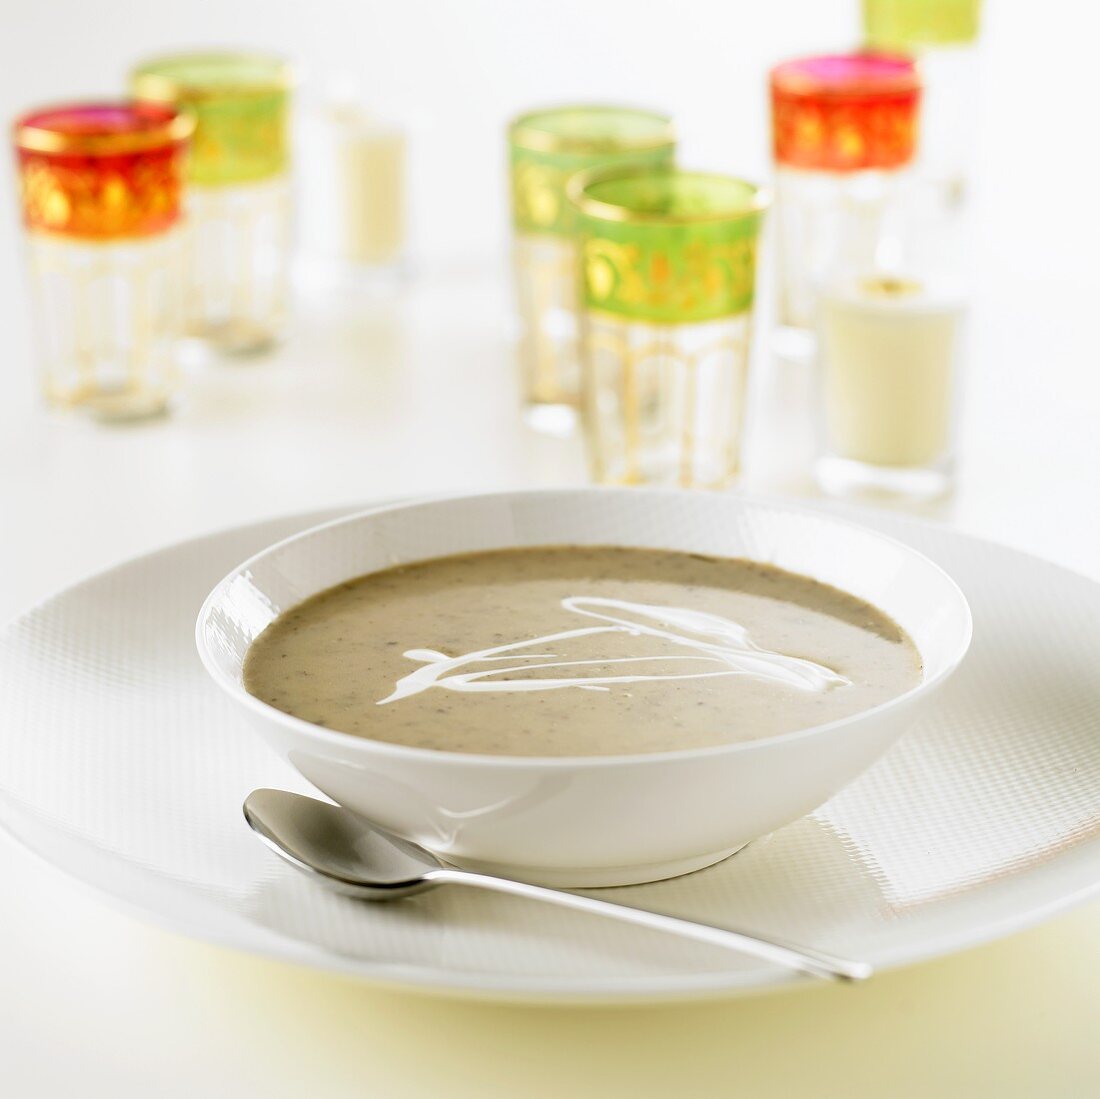 Artichoke soup with crème fraîche